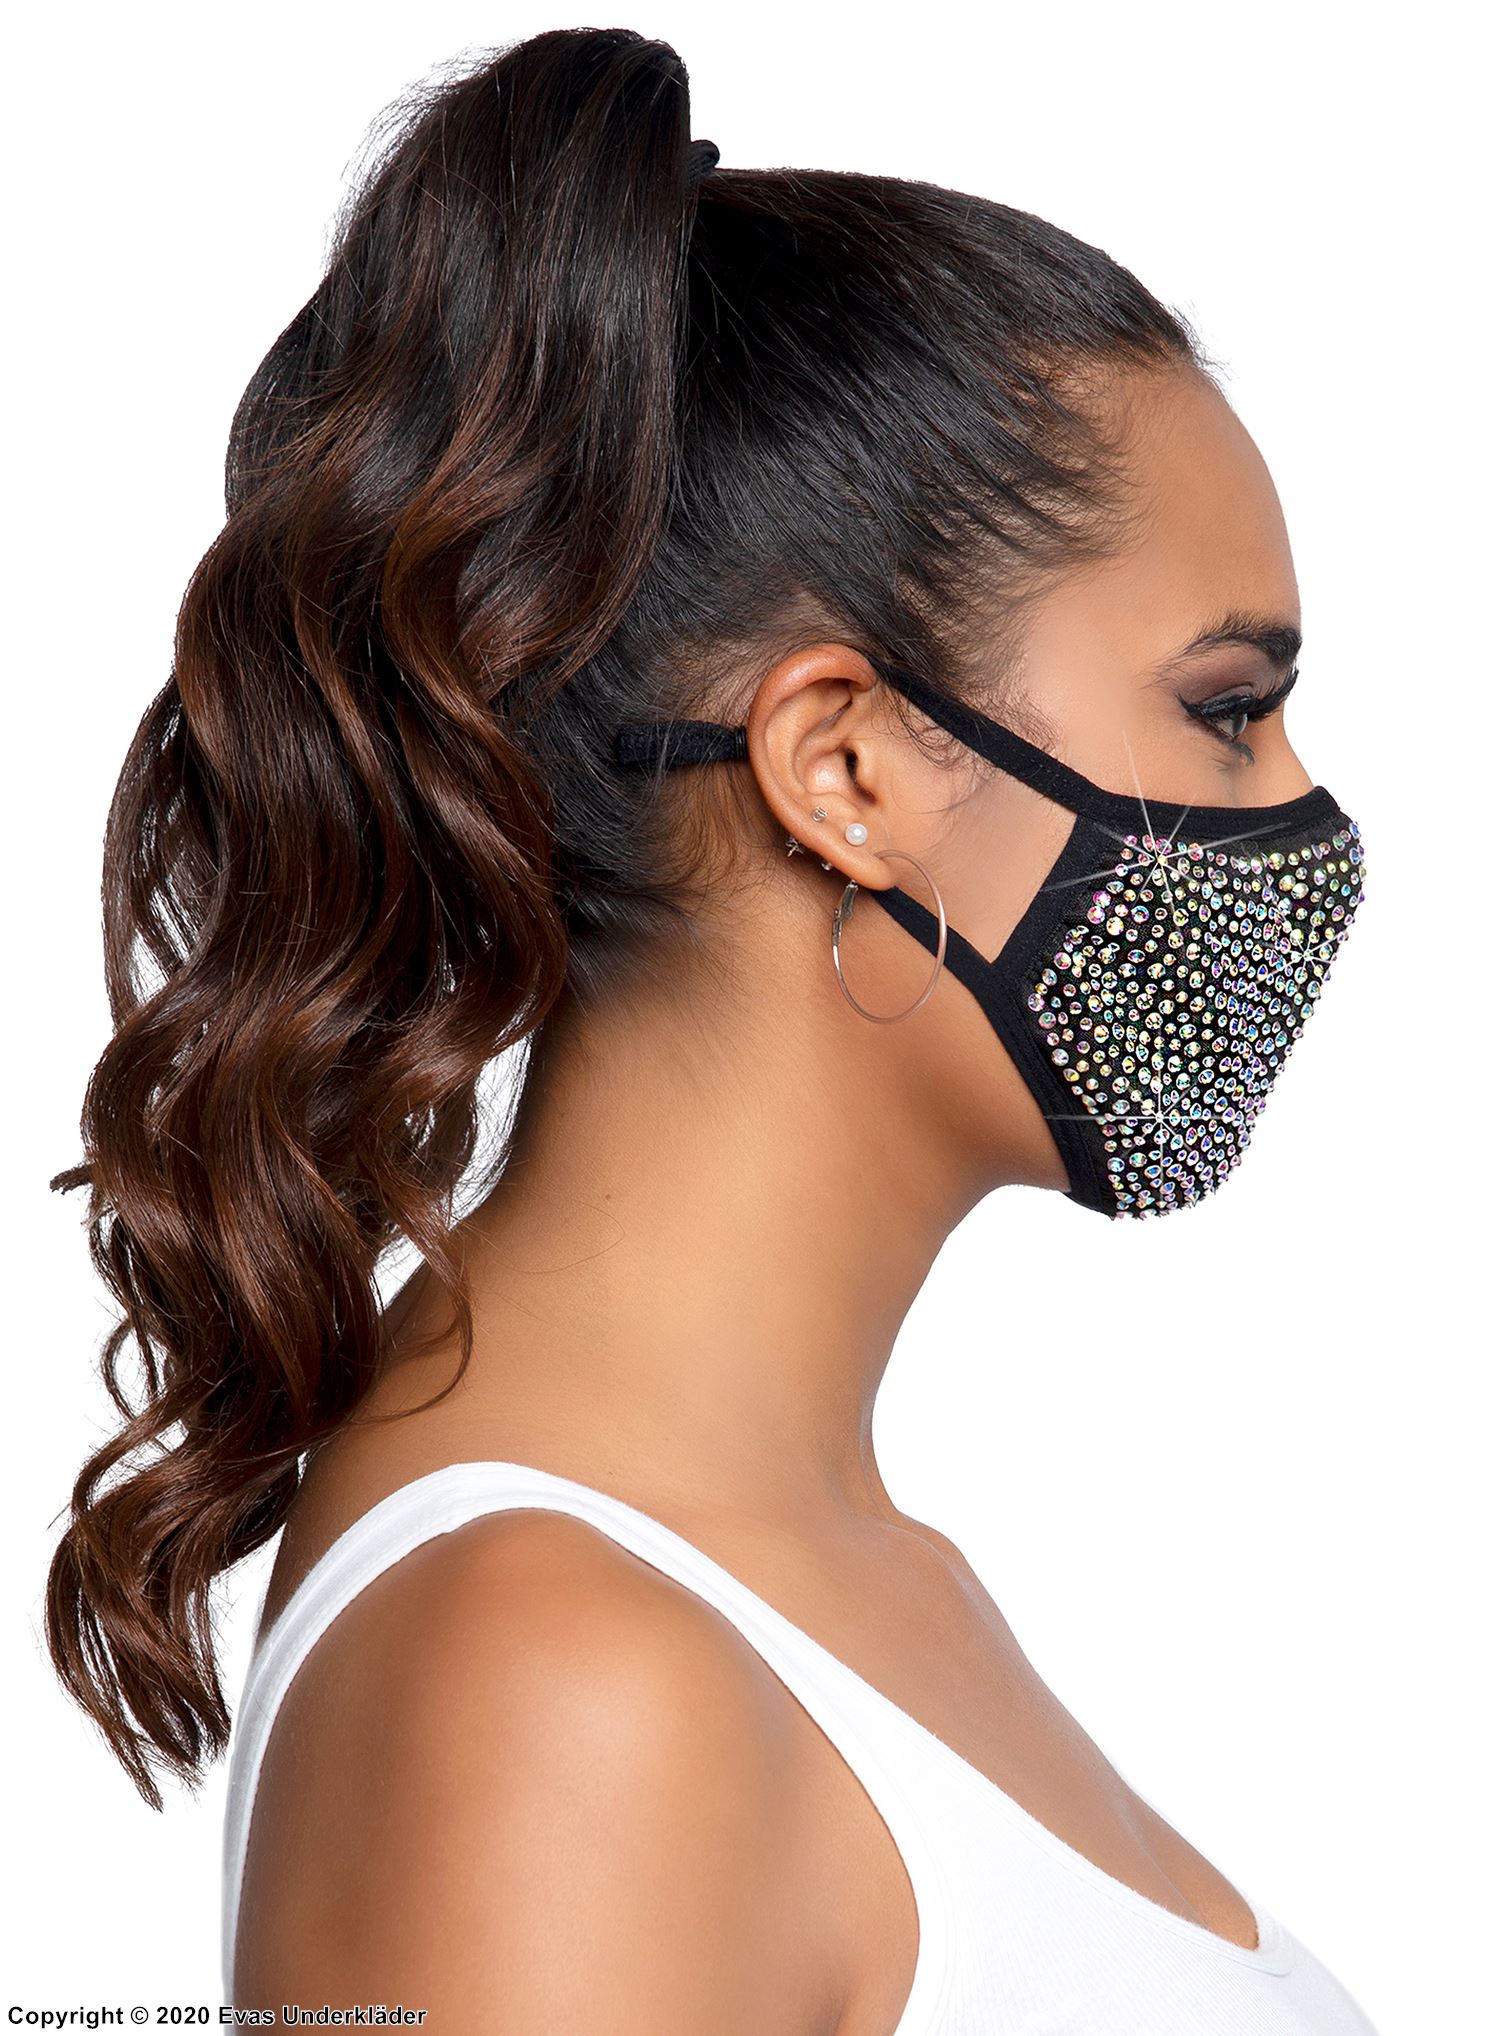 Mundschutzmaske / Mund-Nasen-Schutz, große Strasssteine, mehrere Farben